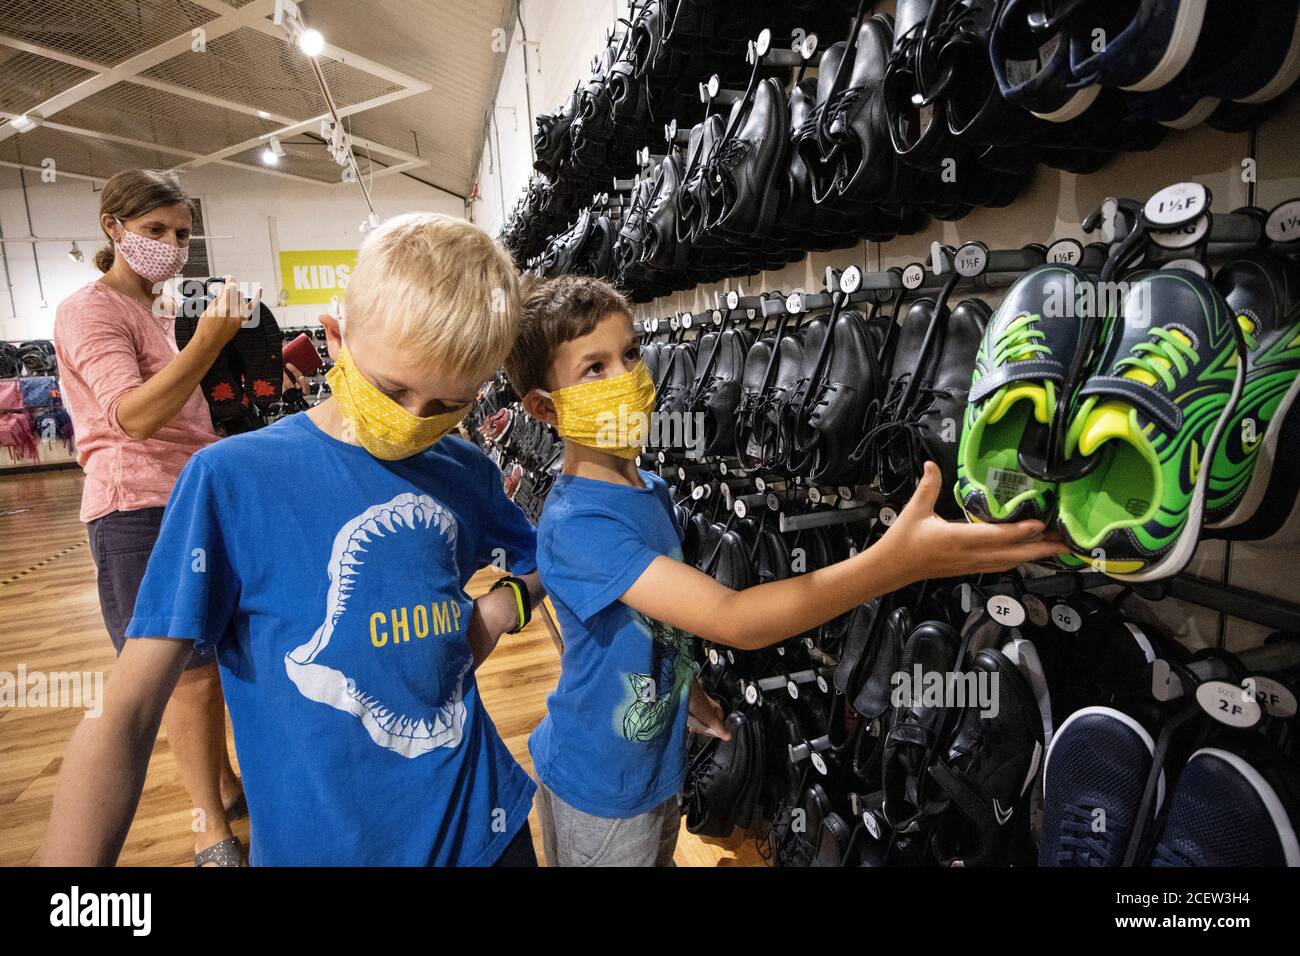 Retour à l'école, une mère et des fils achètent leurs chaussures de retour à l'école dans un magasin de chaussures Clarks à Street, Somerset, Angleterre, Royaume-Uni Banque D'Images